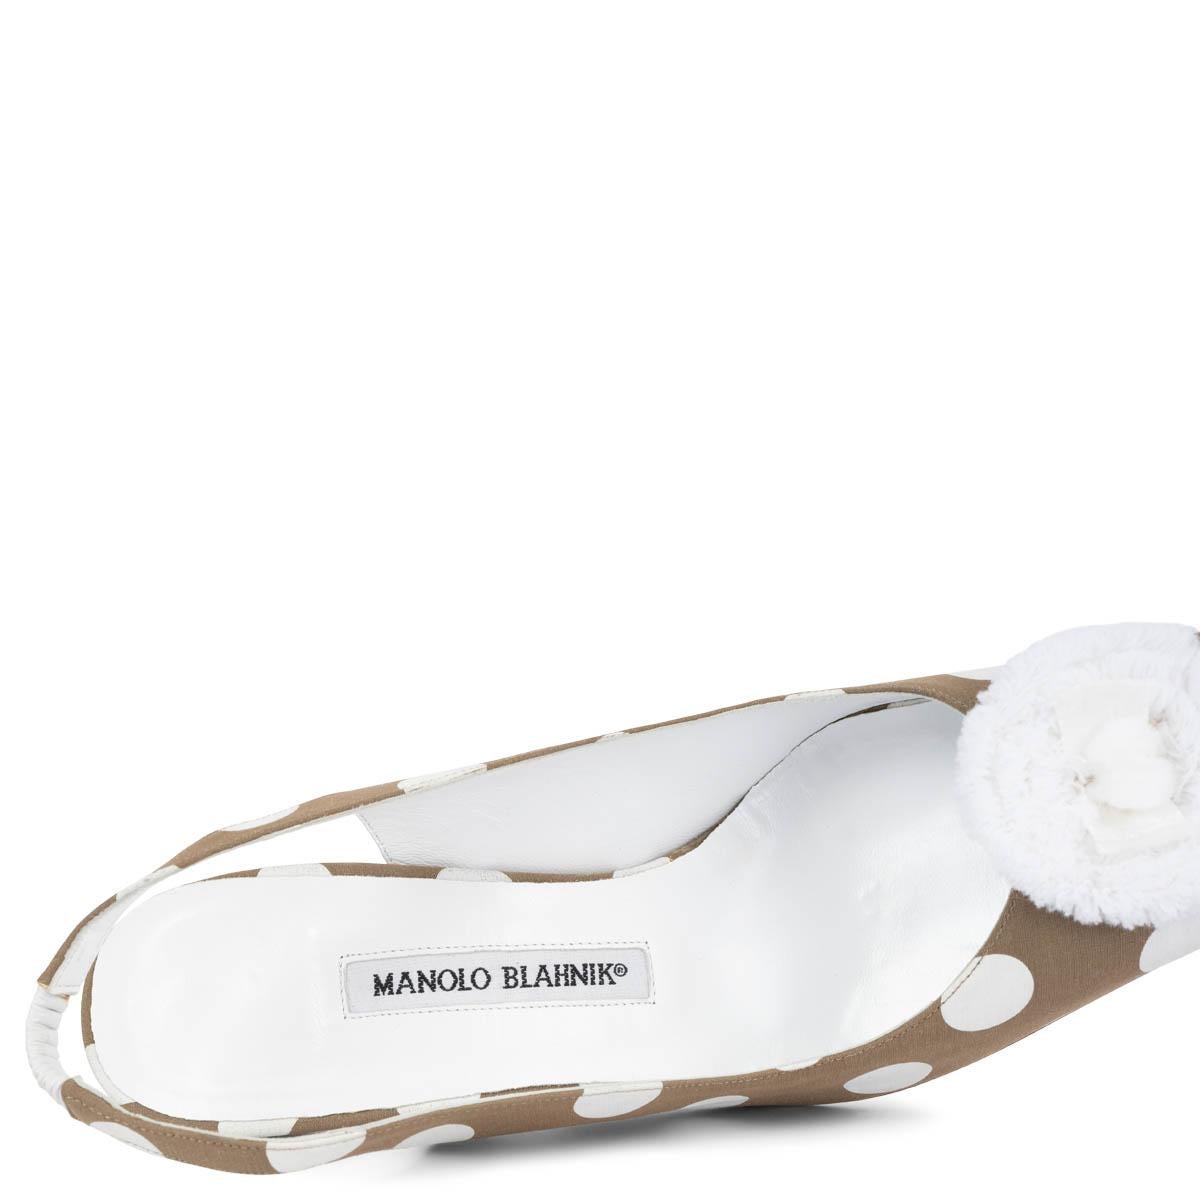 MANOLO BLAHNIK olive drab & white POLKA DOT POMPOM Slinback Pumps Shoes 38.5 For Sale 2